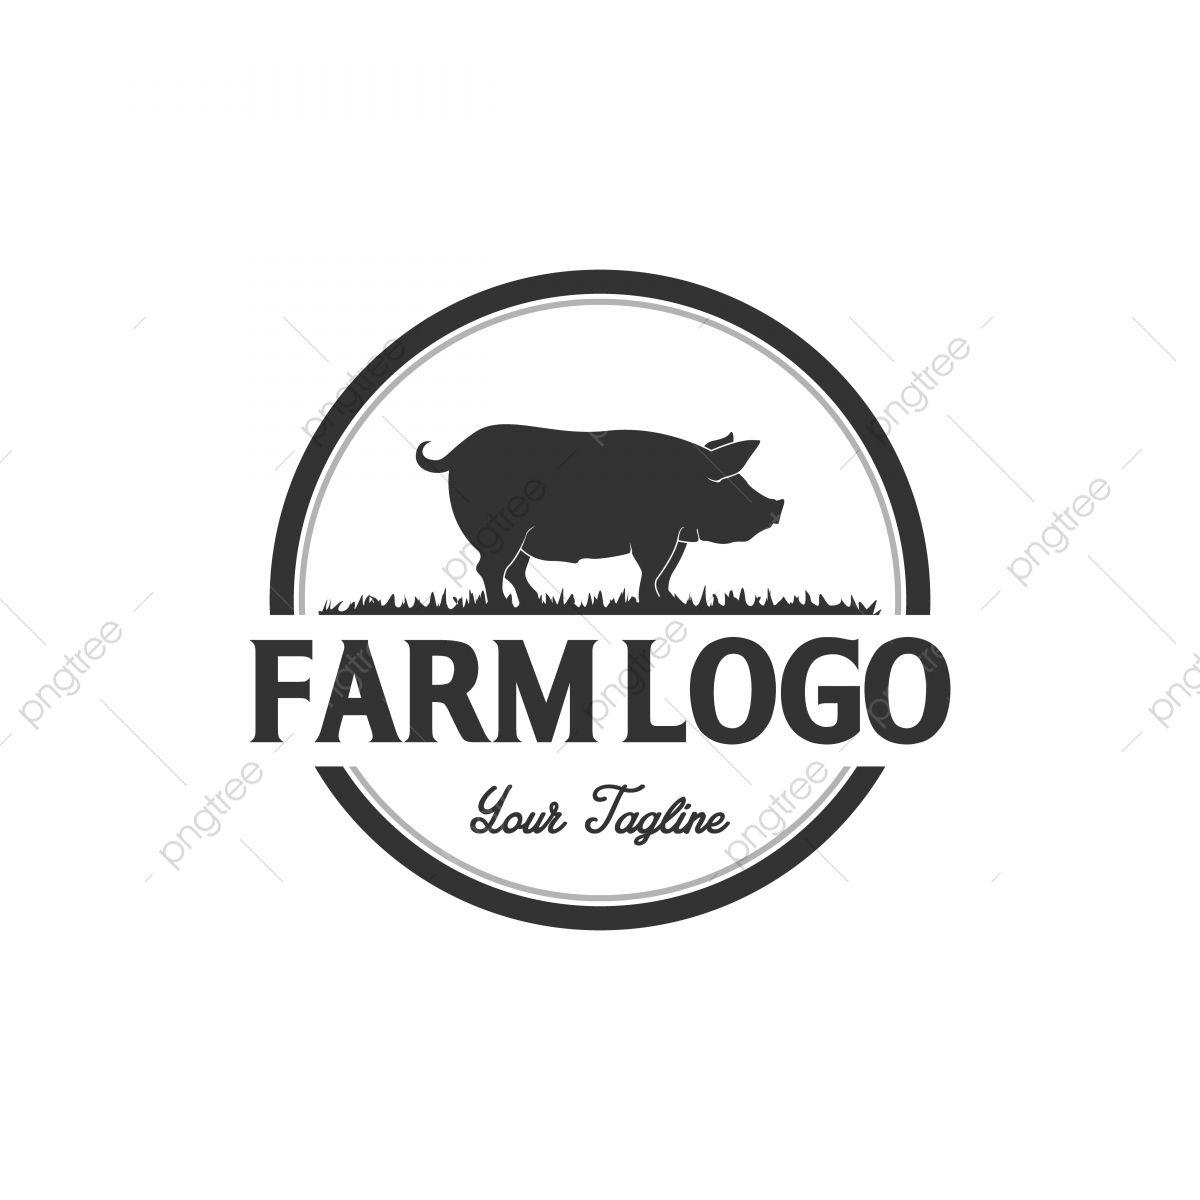 Pork Logo - Pork Logo Designs, Animal, Background, Badge PNG and Vector